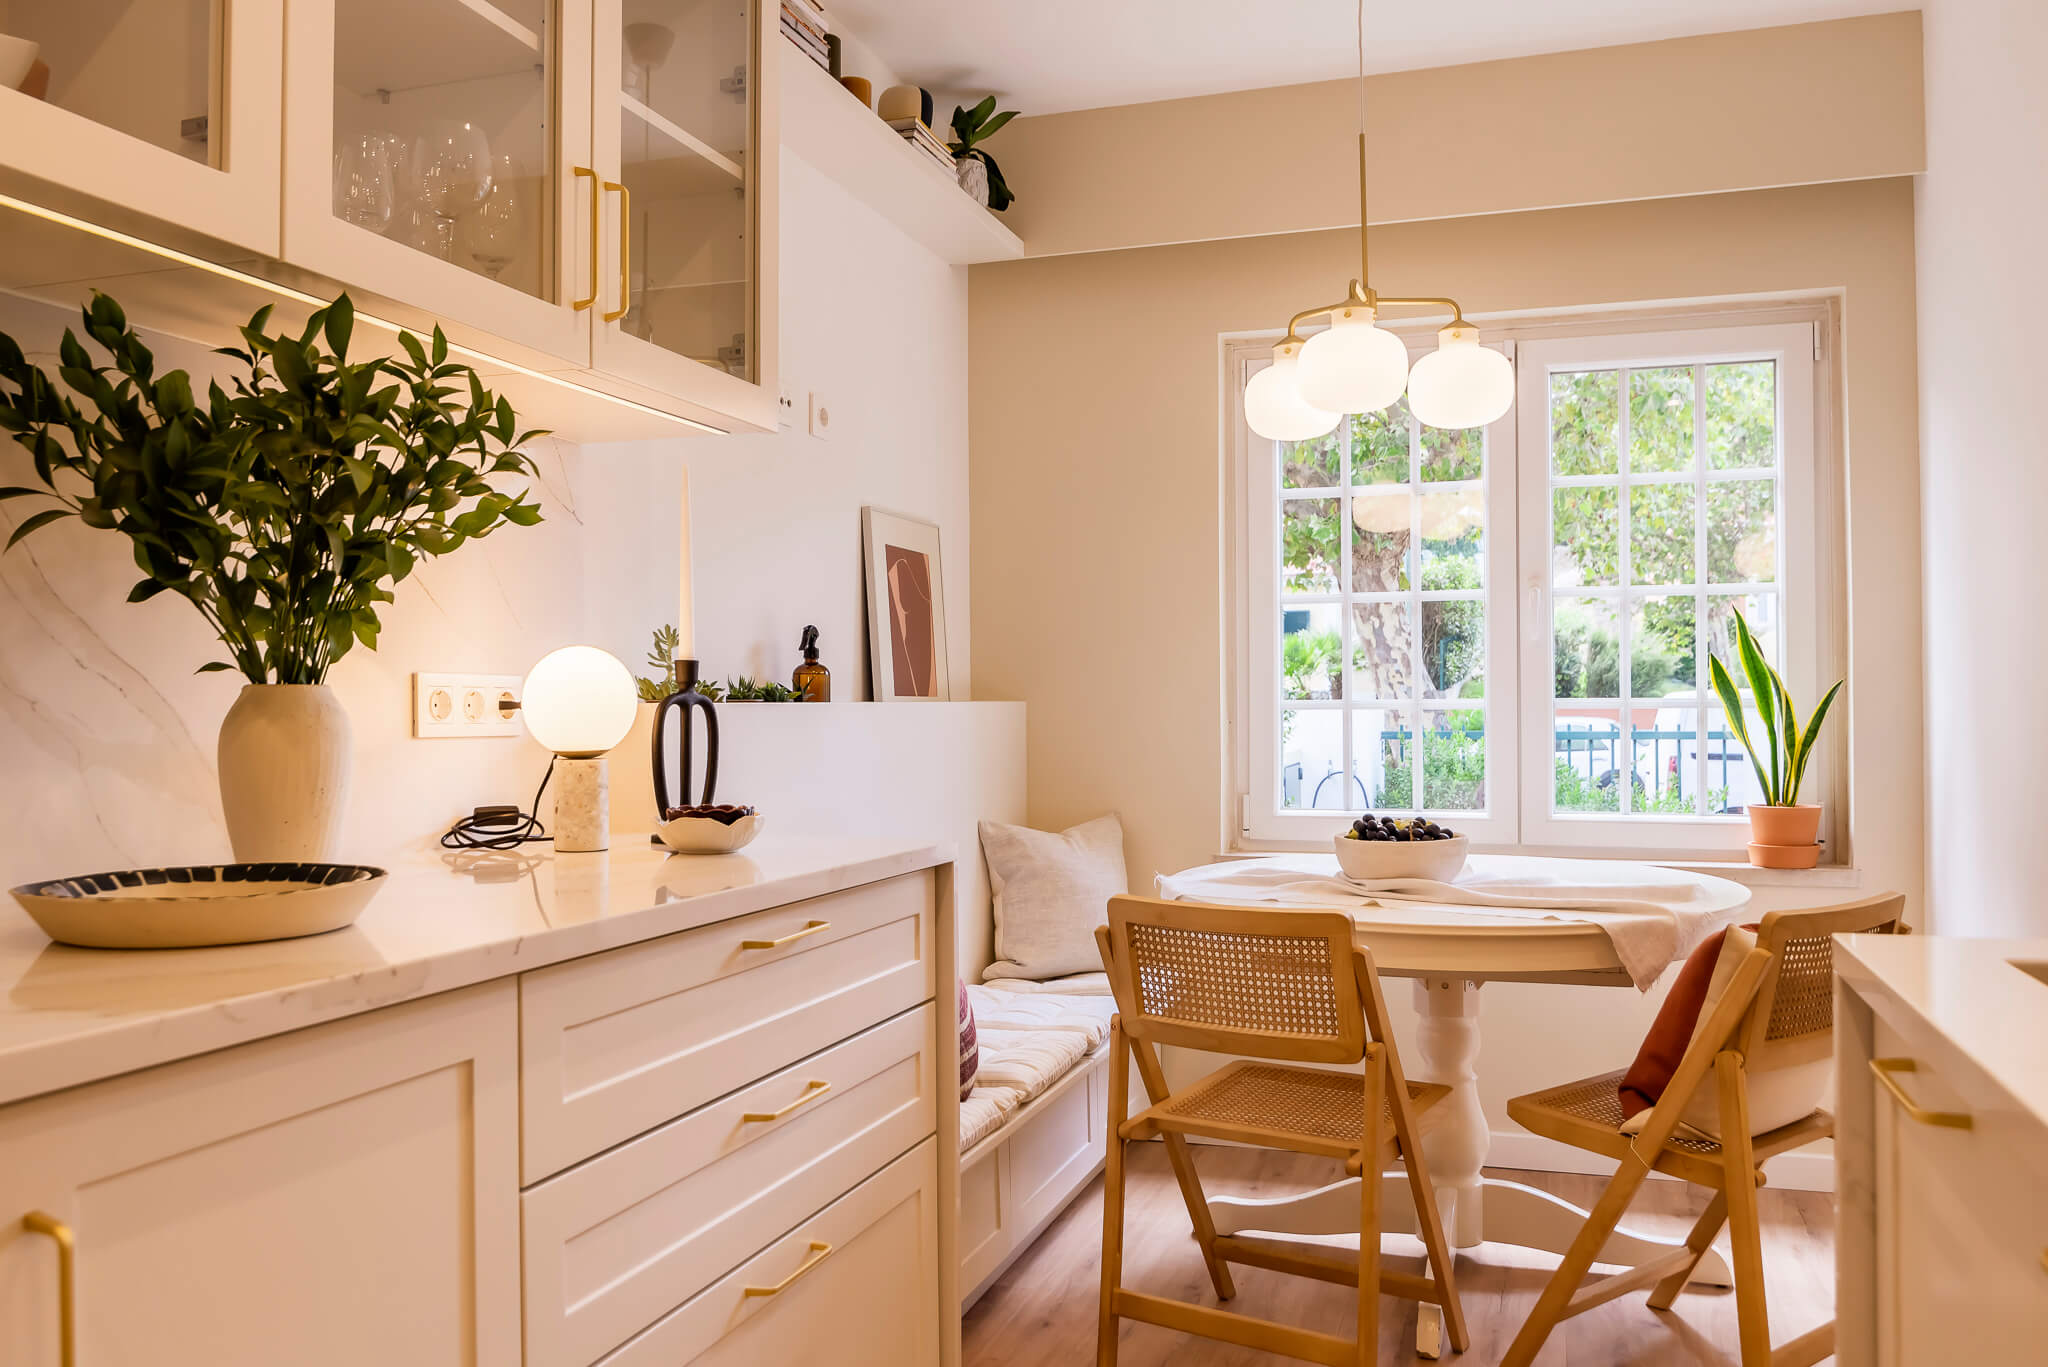 Design de interiores - Cozinha moderna com zona de refeição (breakfast nook) com banco e acabamentos brancos e madeira